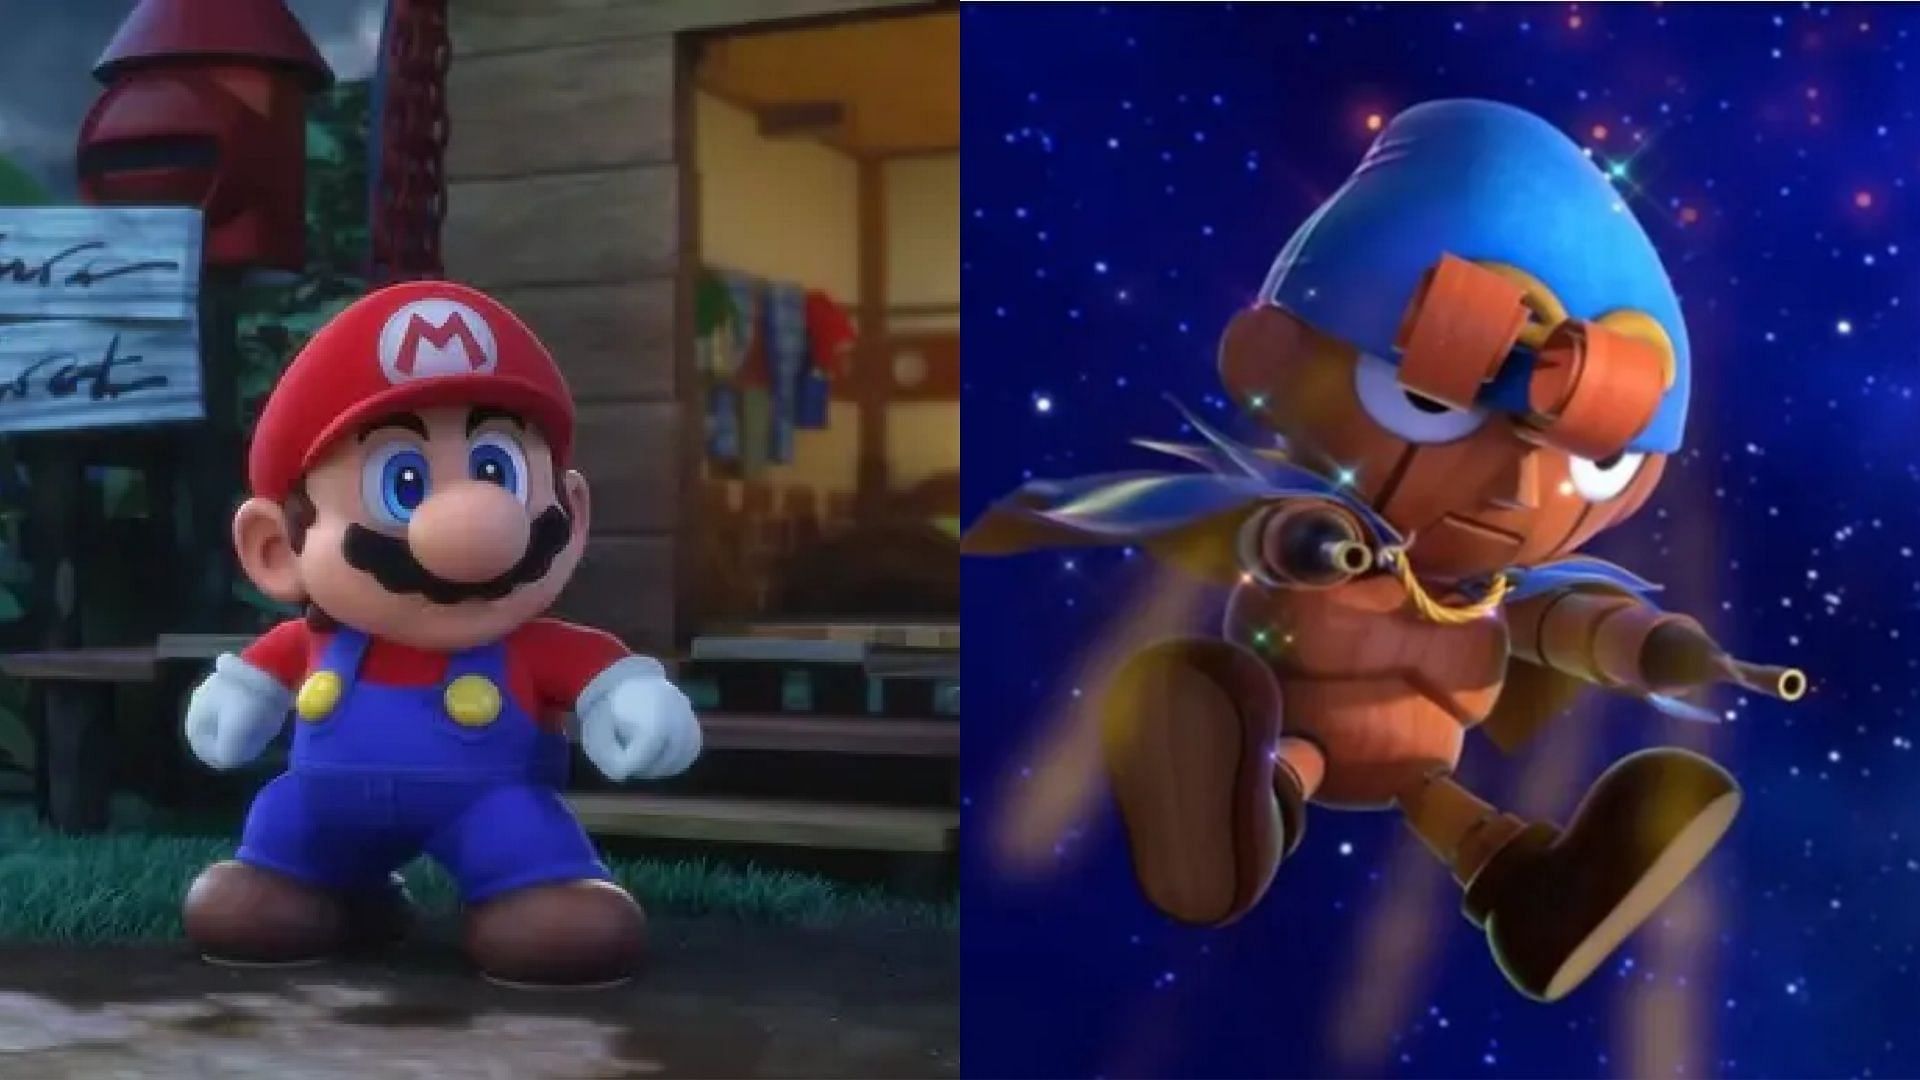 Mario and Geno are close, but no cigar (Image via Nintendo)